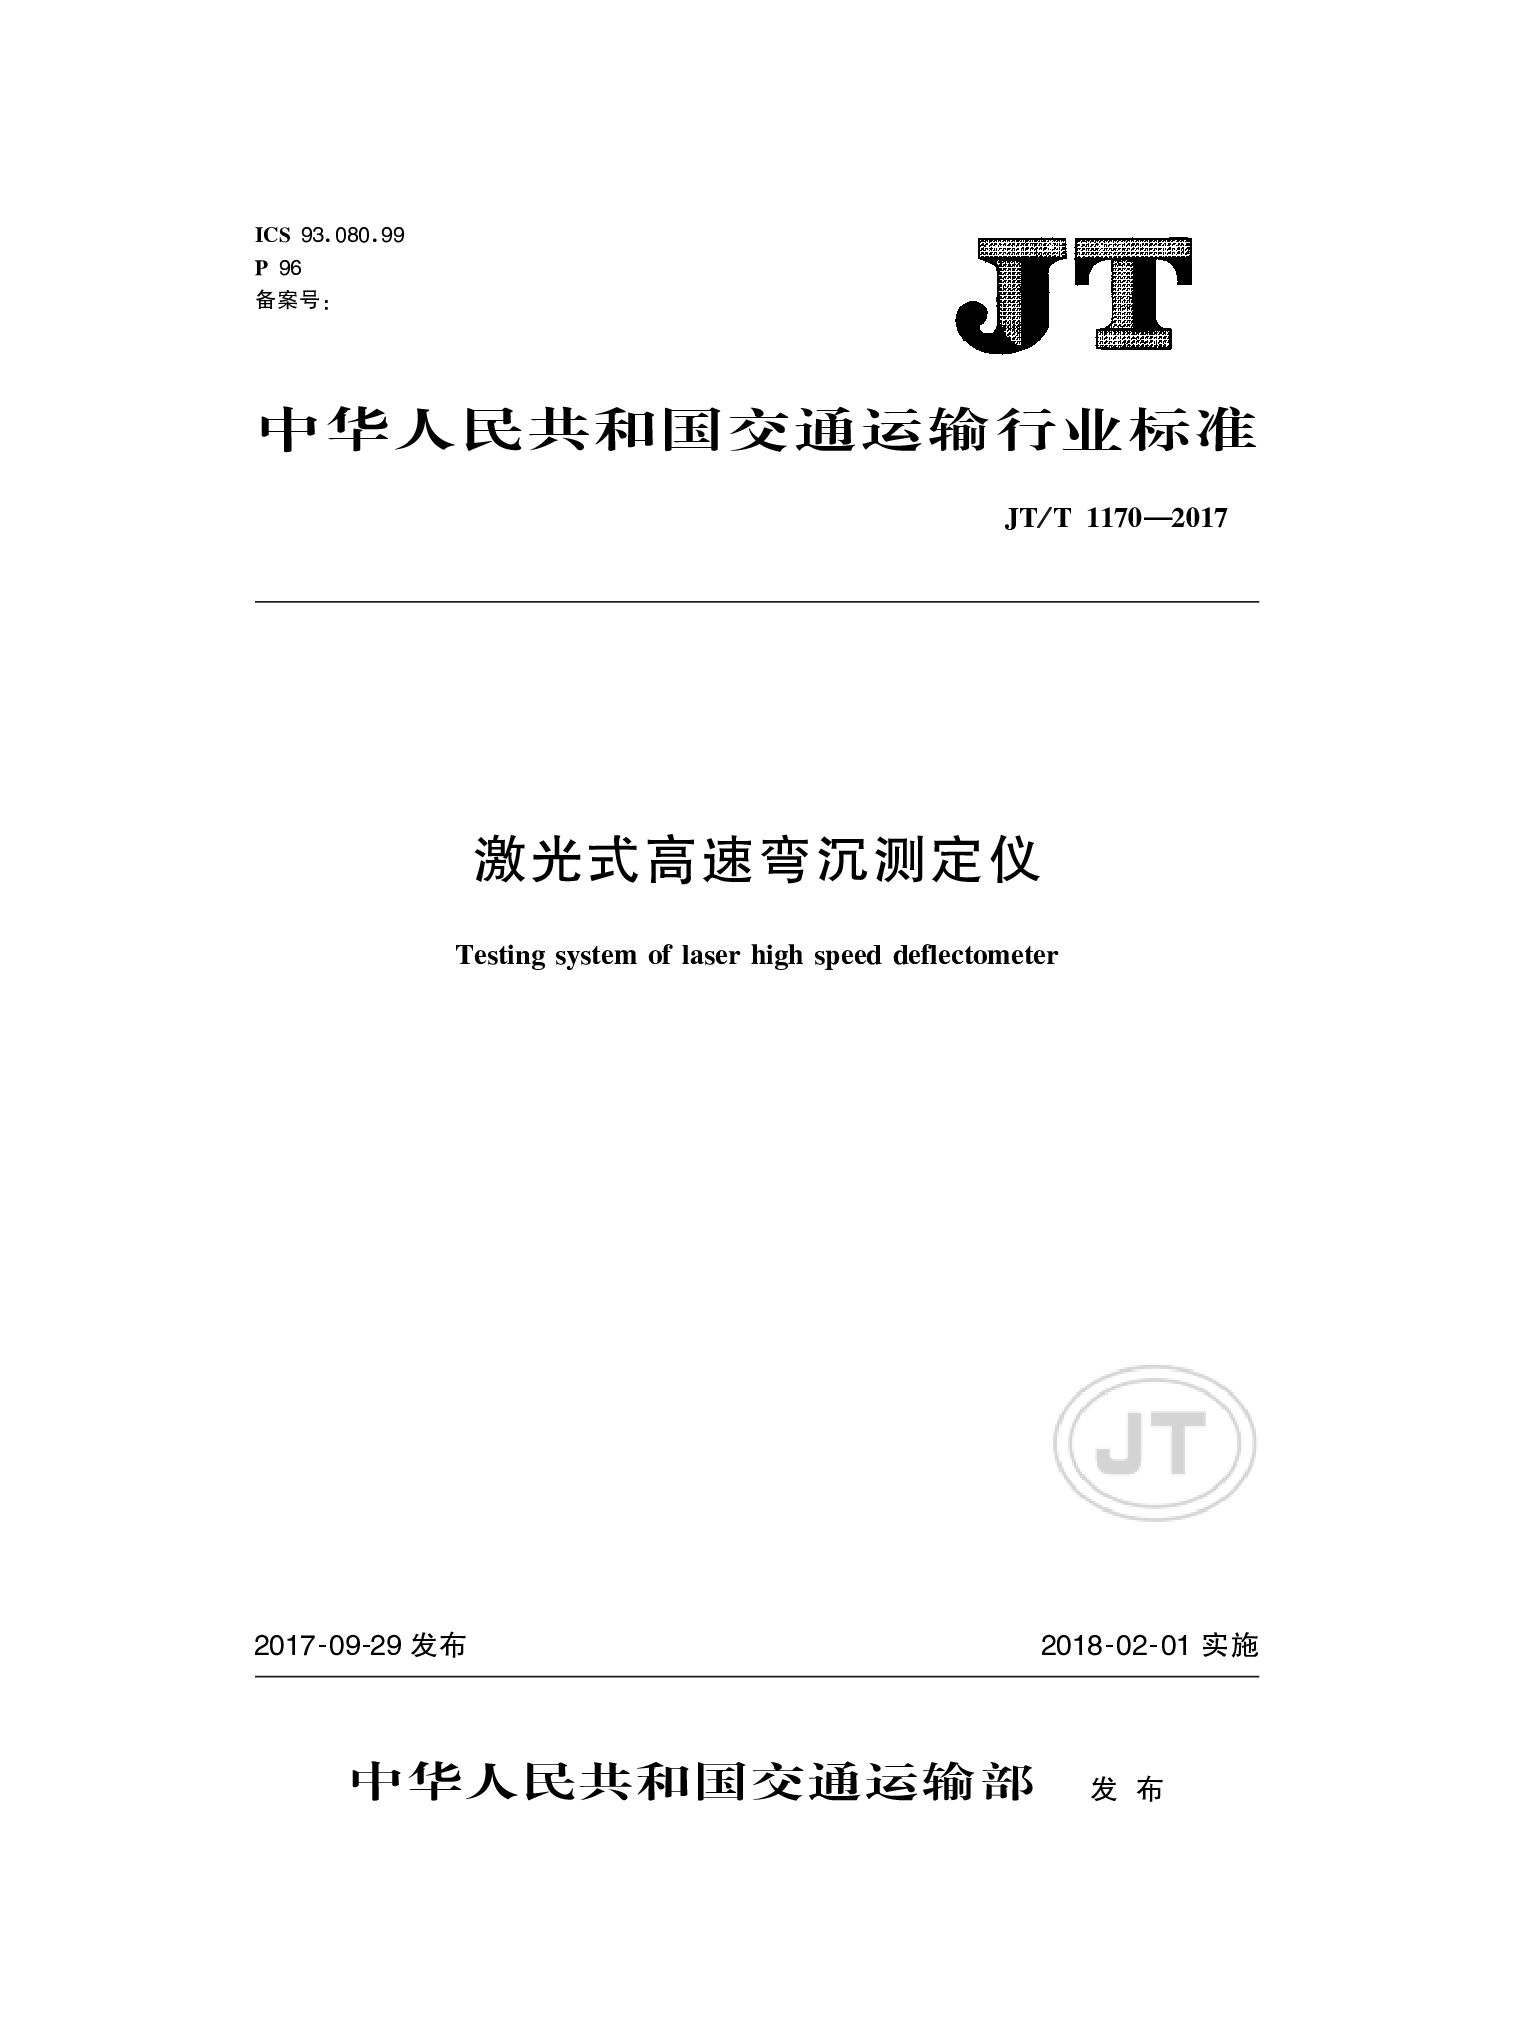 JT/T 1170-2017封面图